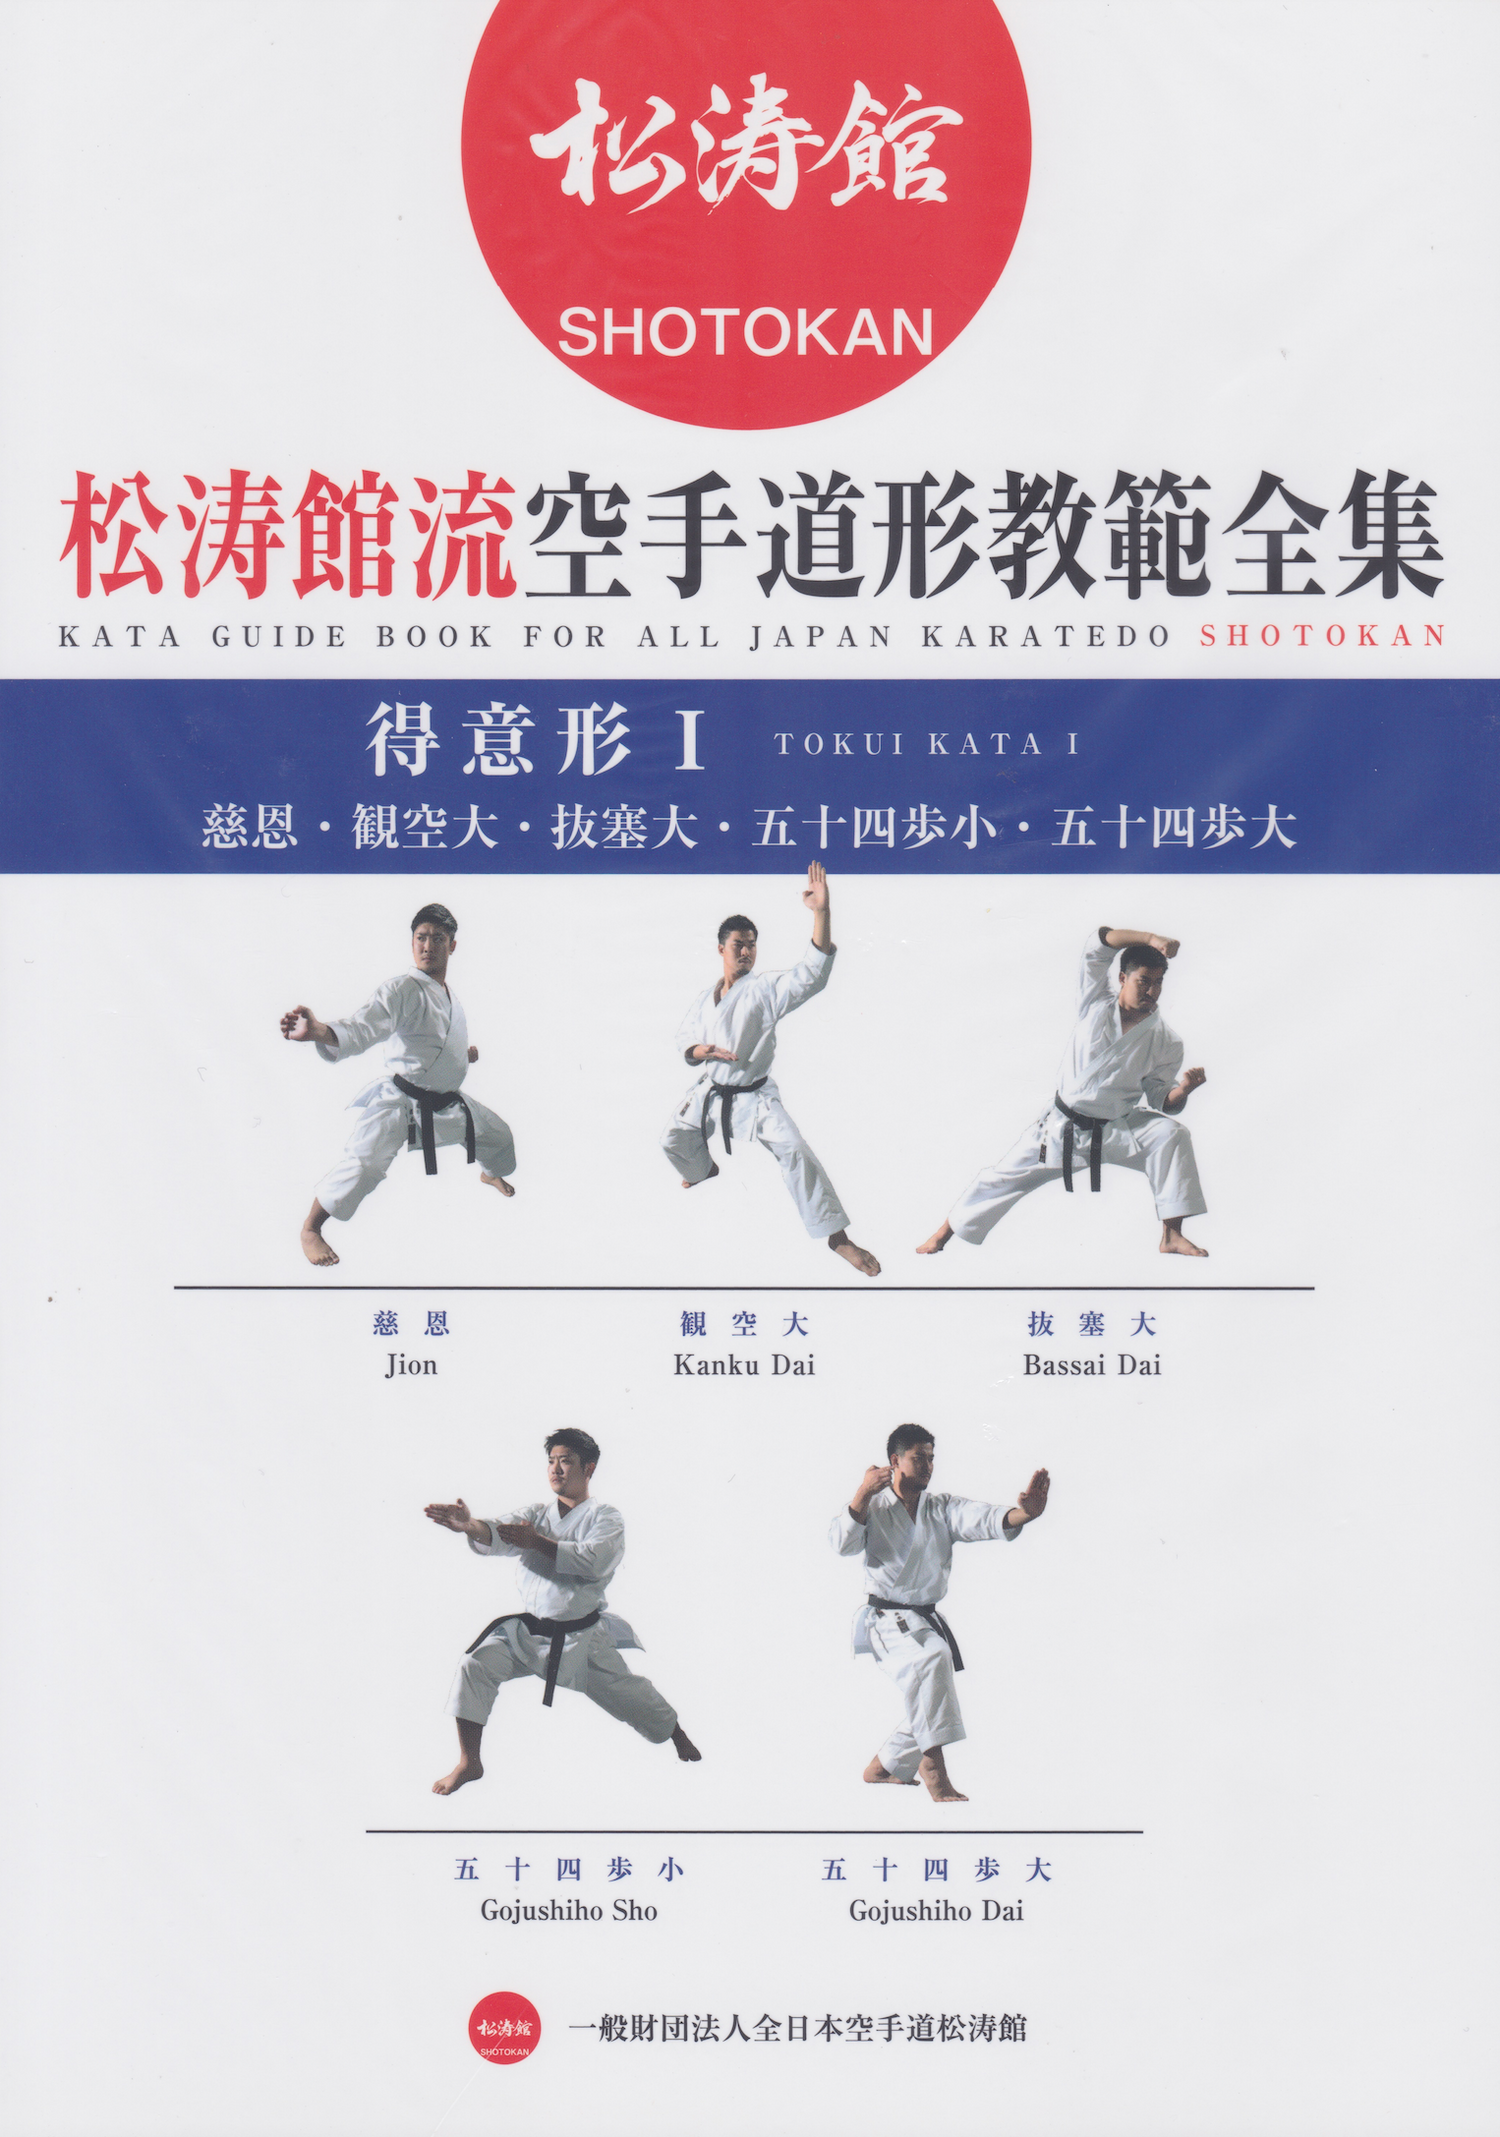 Guía de Kata para todo Japón Karatedo Shotokan Tokui Kata 1